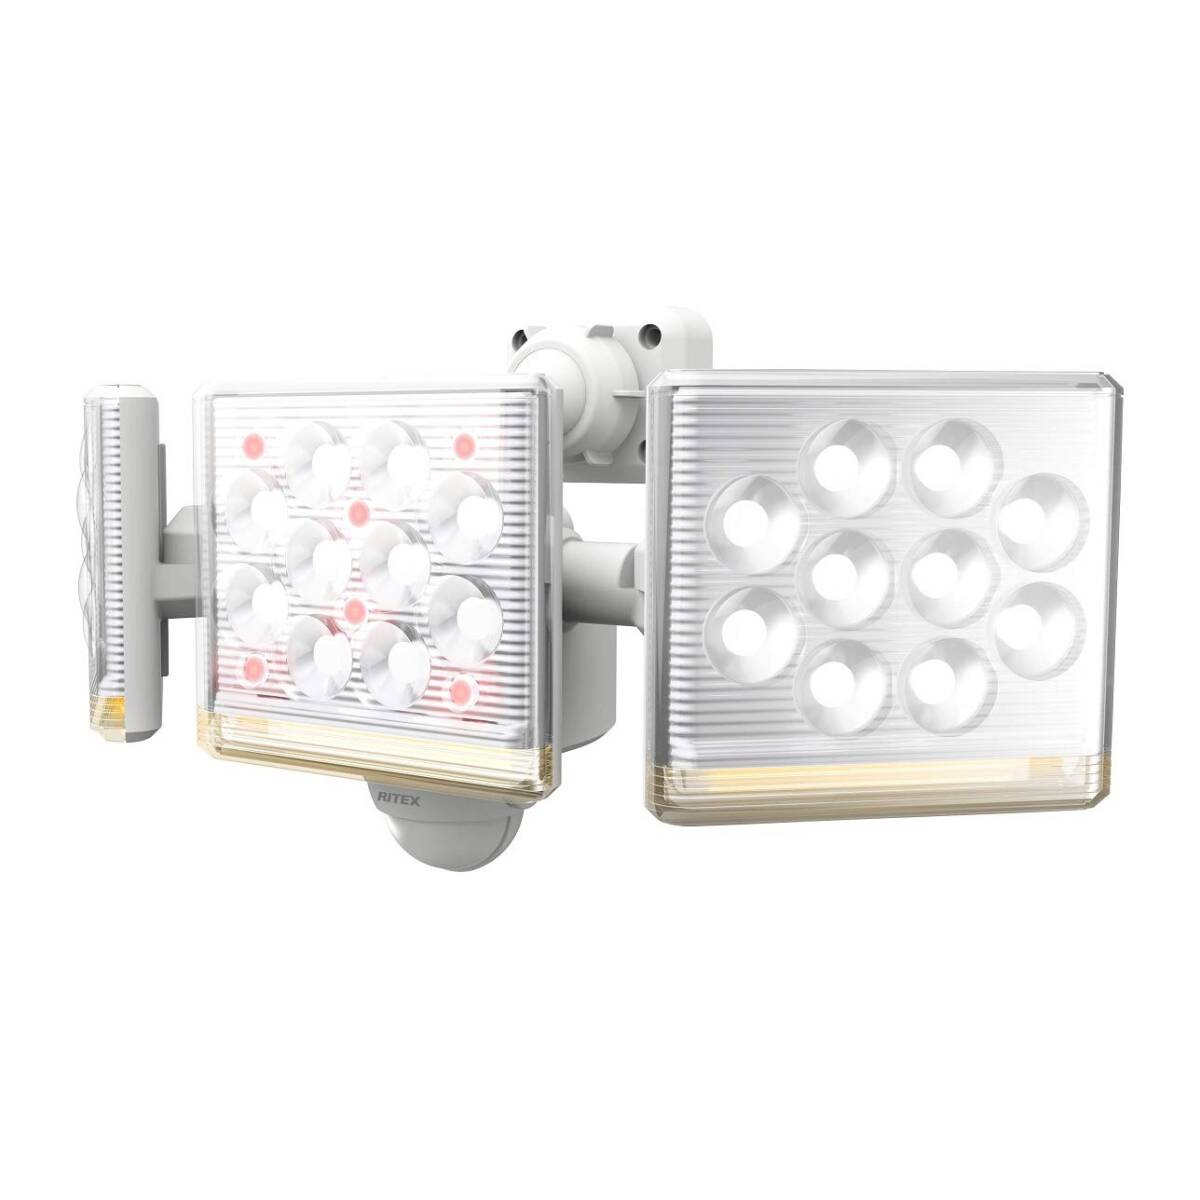 ムサシ RITEX フリーアーム式高機能LEDセンサーライト(12W×3灯) 「コンセント式」 LED-AC3045 ホワイト_画像1